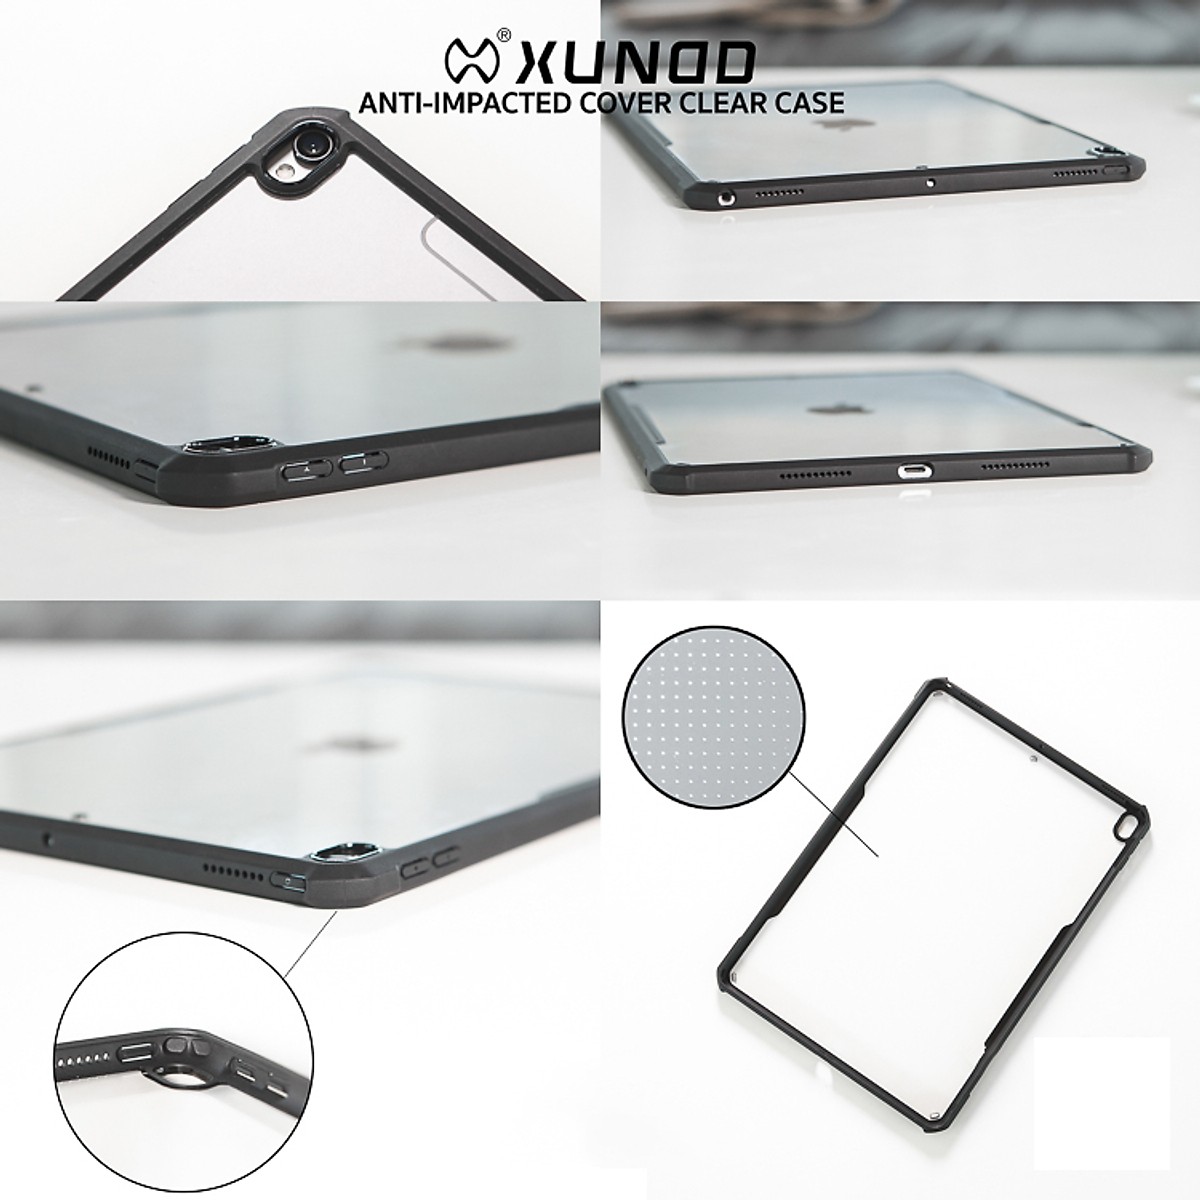 Ốp lưng XUNDD cao cấp chống sốc, mặt lưng trong suốt bảo vệ iPad Air 2019/Pro 10.5 inch 2017 - Hàng Nhập Khẩu